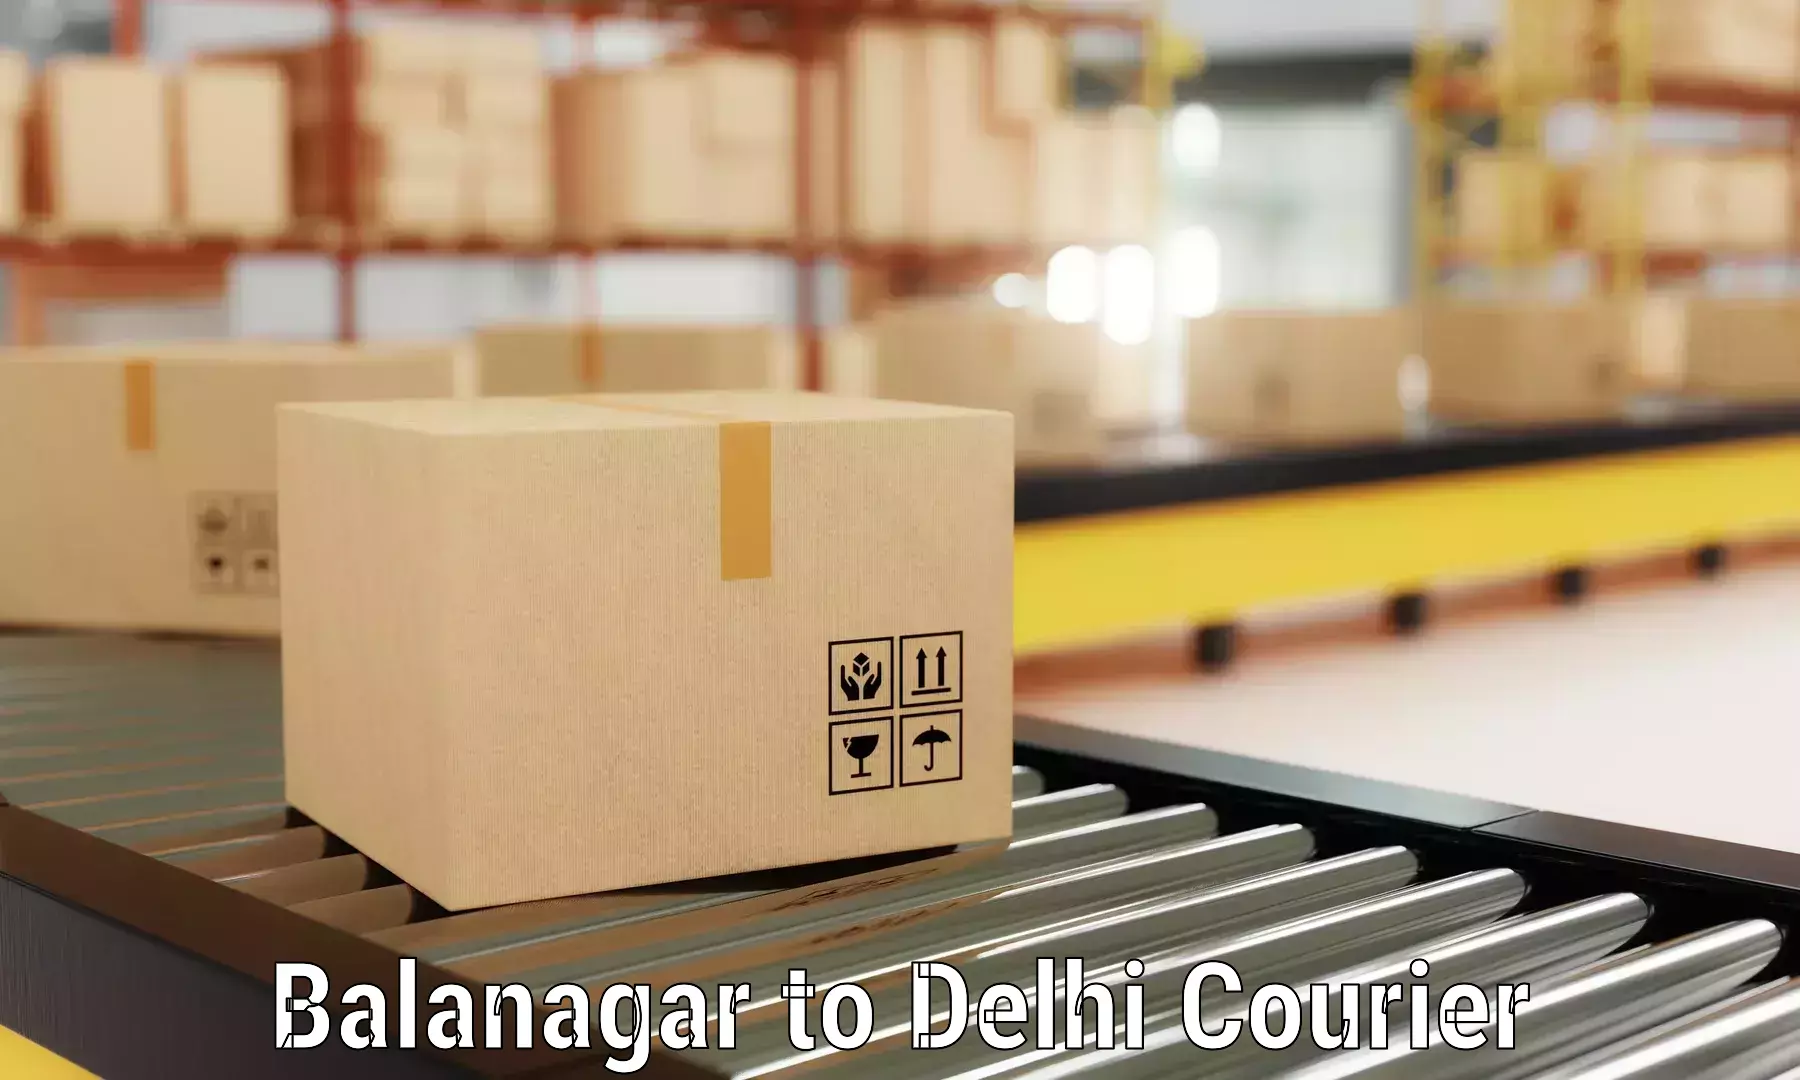 Professional movers and packers Balanagar to Ramesh Nagar